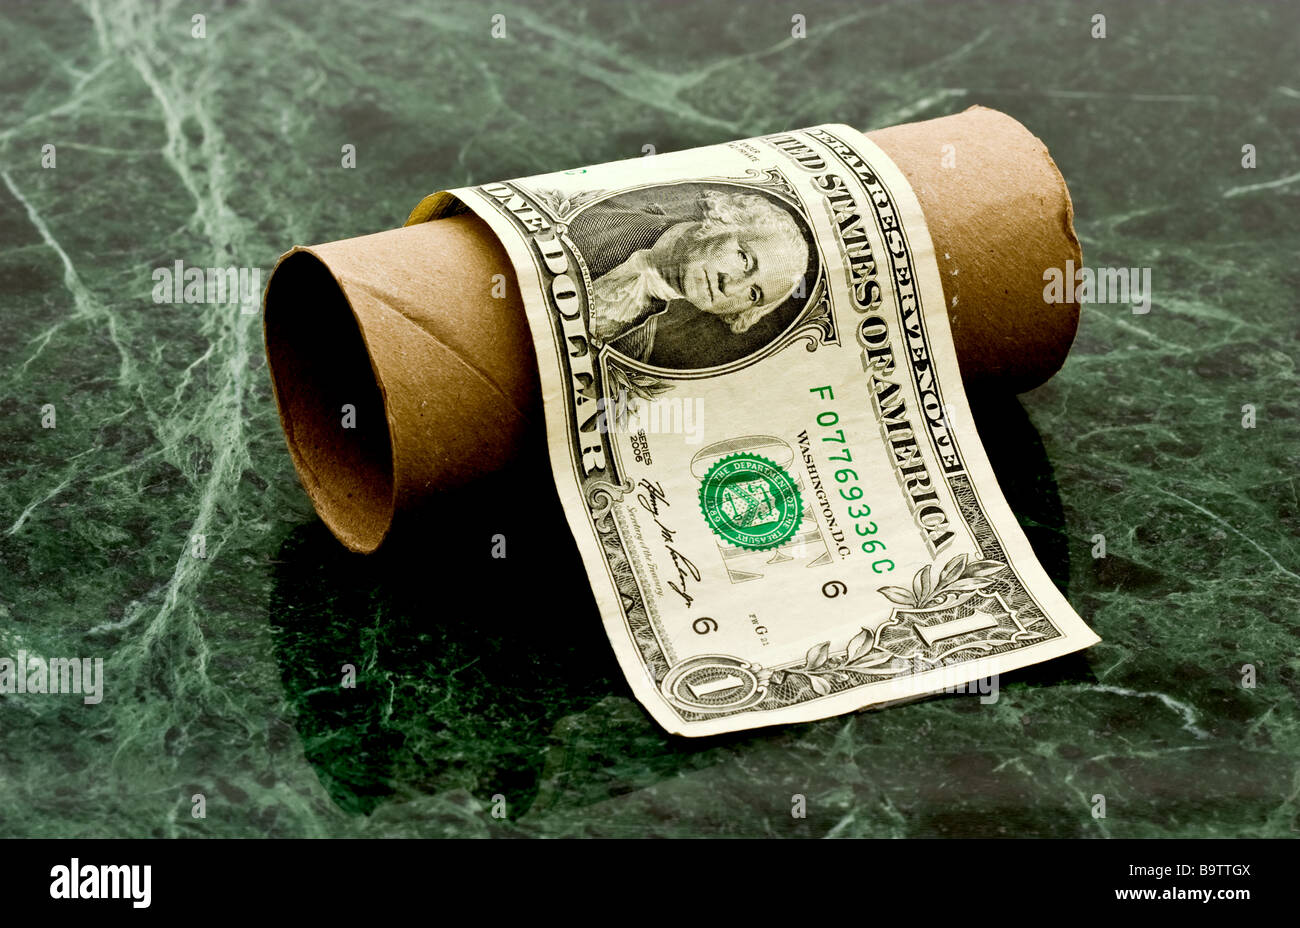 Un dollar américain sur un rouleau de papier toilettes en carton Banque D'Images